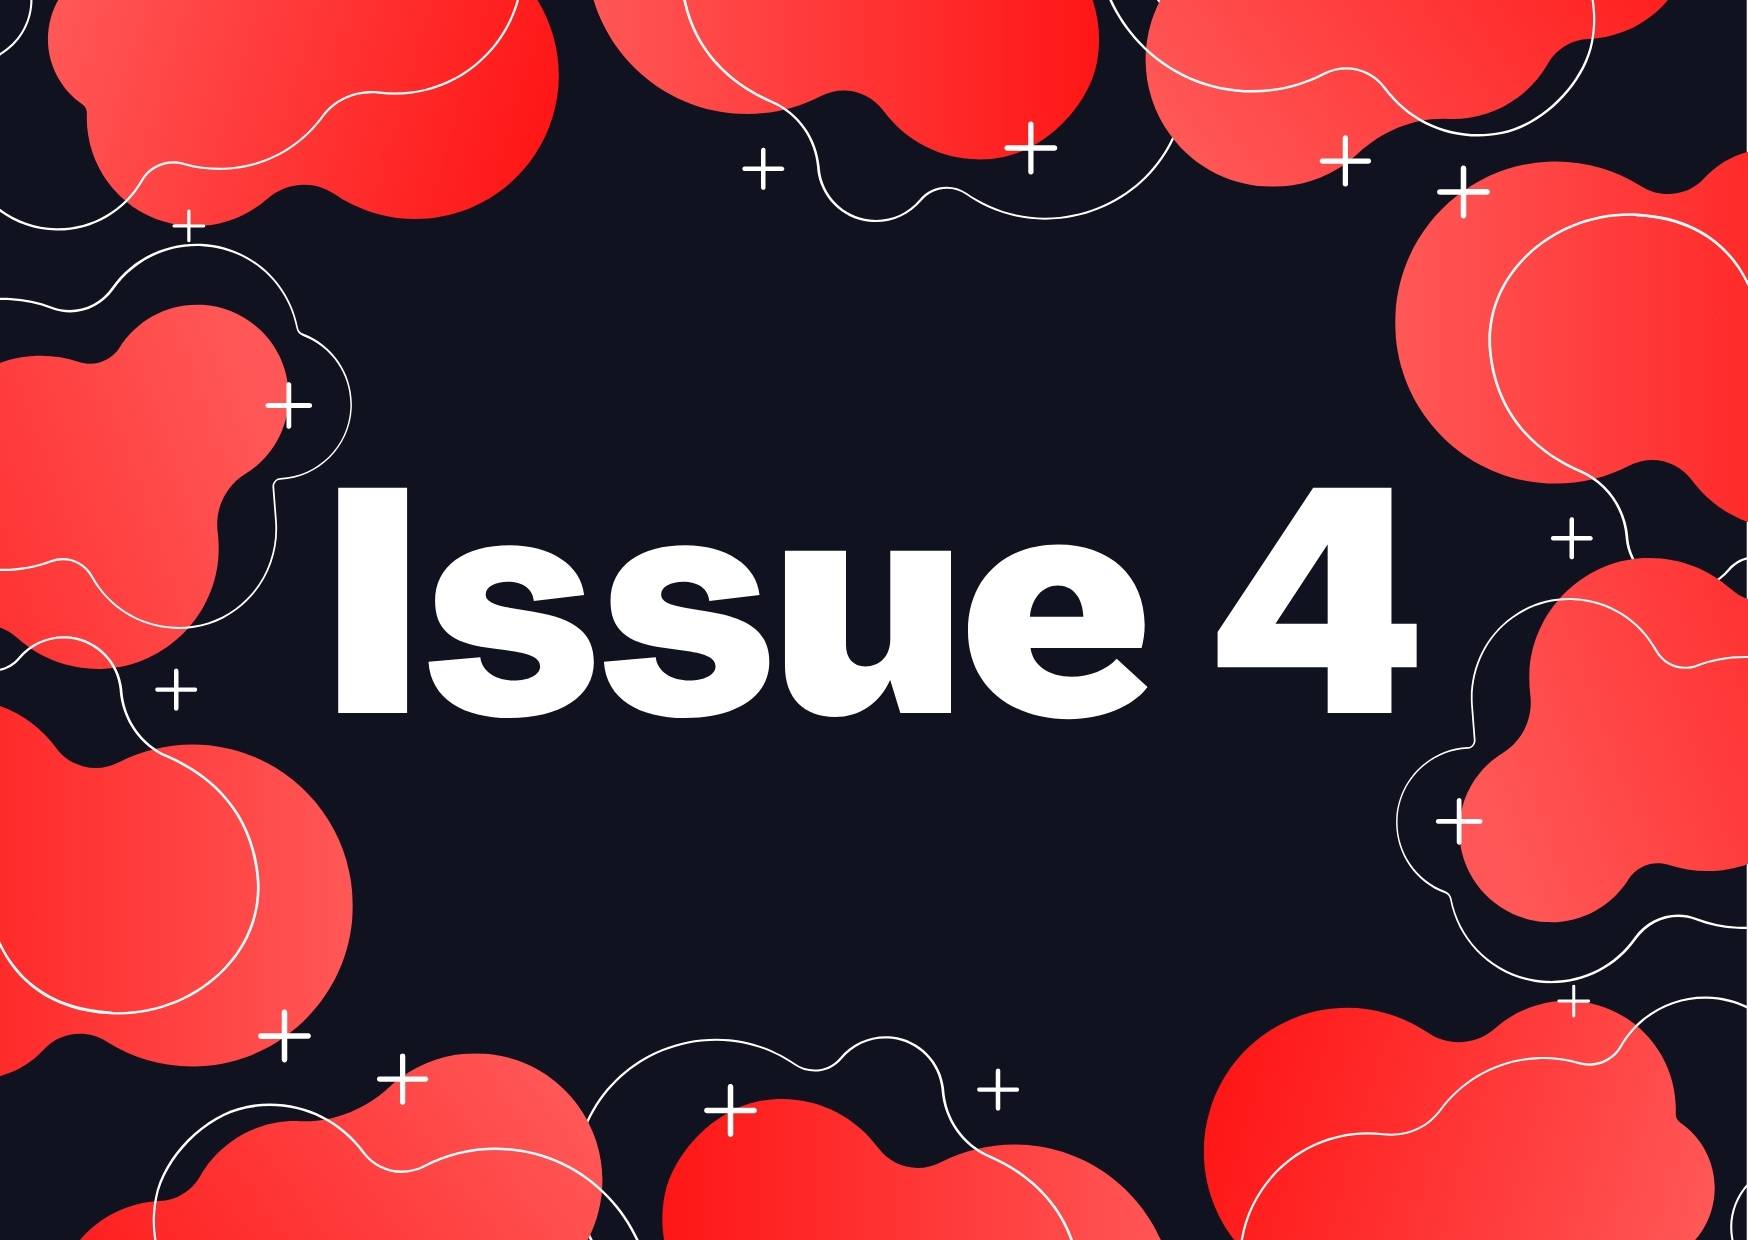 VOLUME 2: ISSUE 4